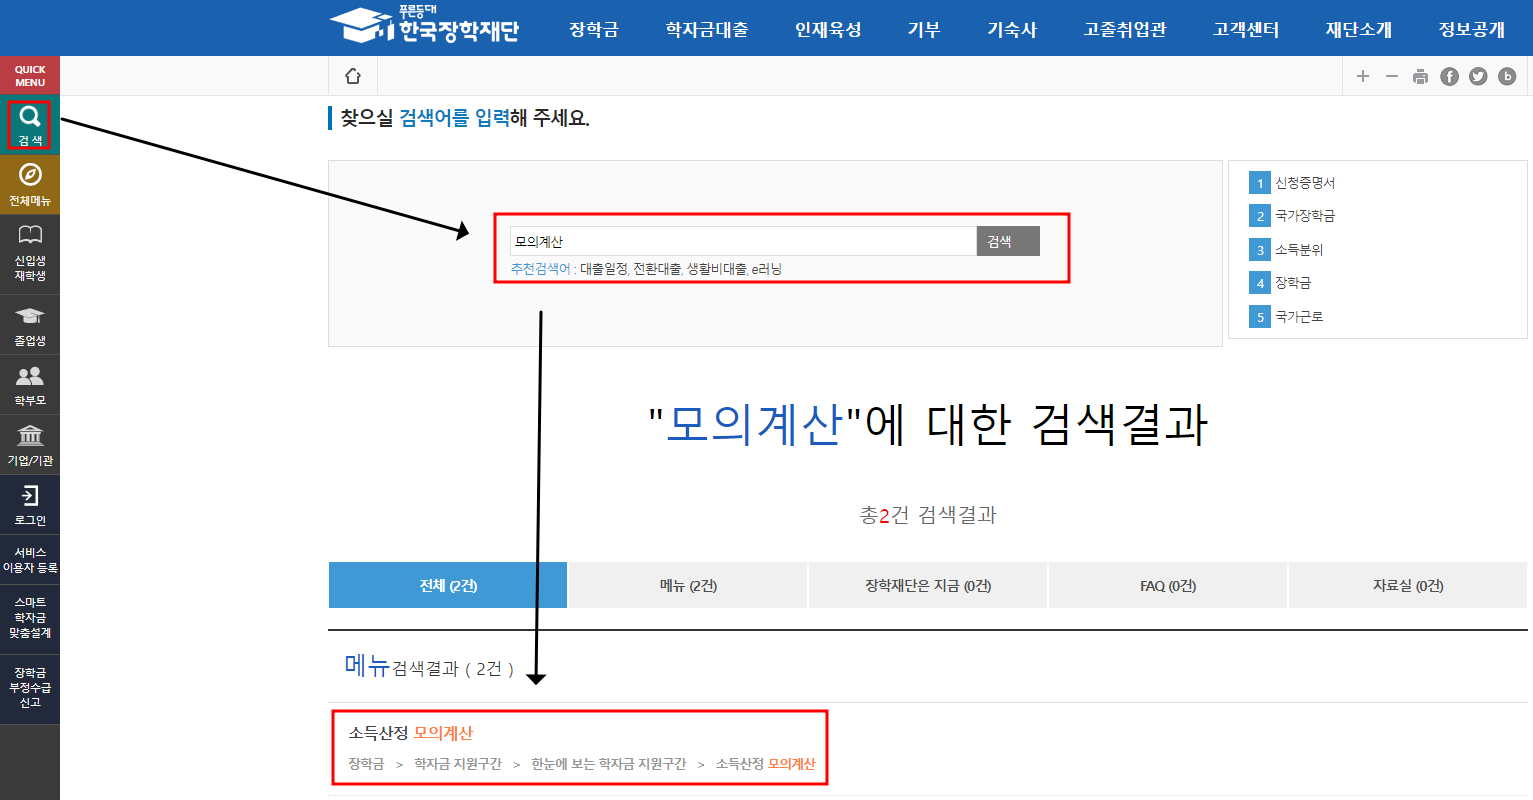 한국장학재단 국가장학금 소득분위 모의계산